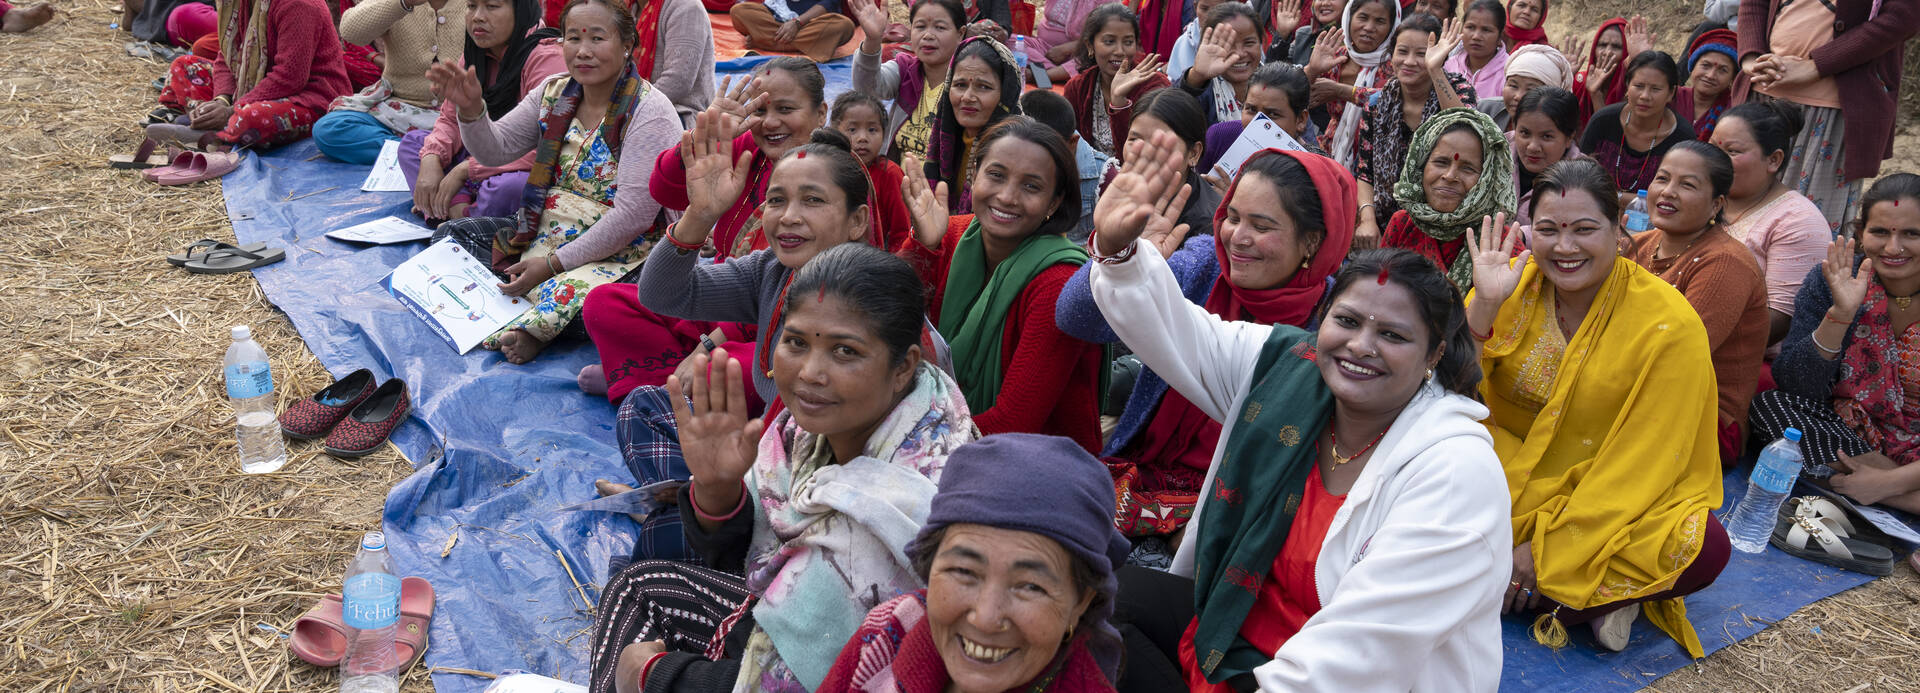 Goma und die anderen Frauen aus ihrem Dorf in Nepal sitzen nach einer Demonstration für Ernährungssicherheit gemeinsam auf dem Boden und winken in die Kamera.